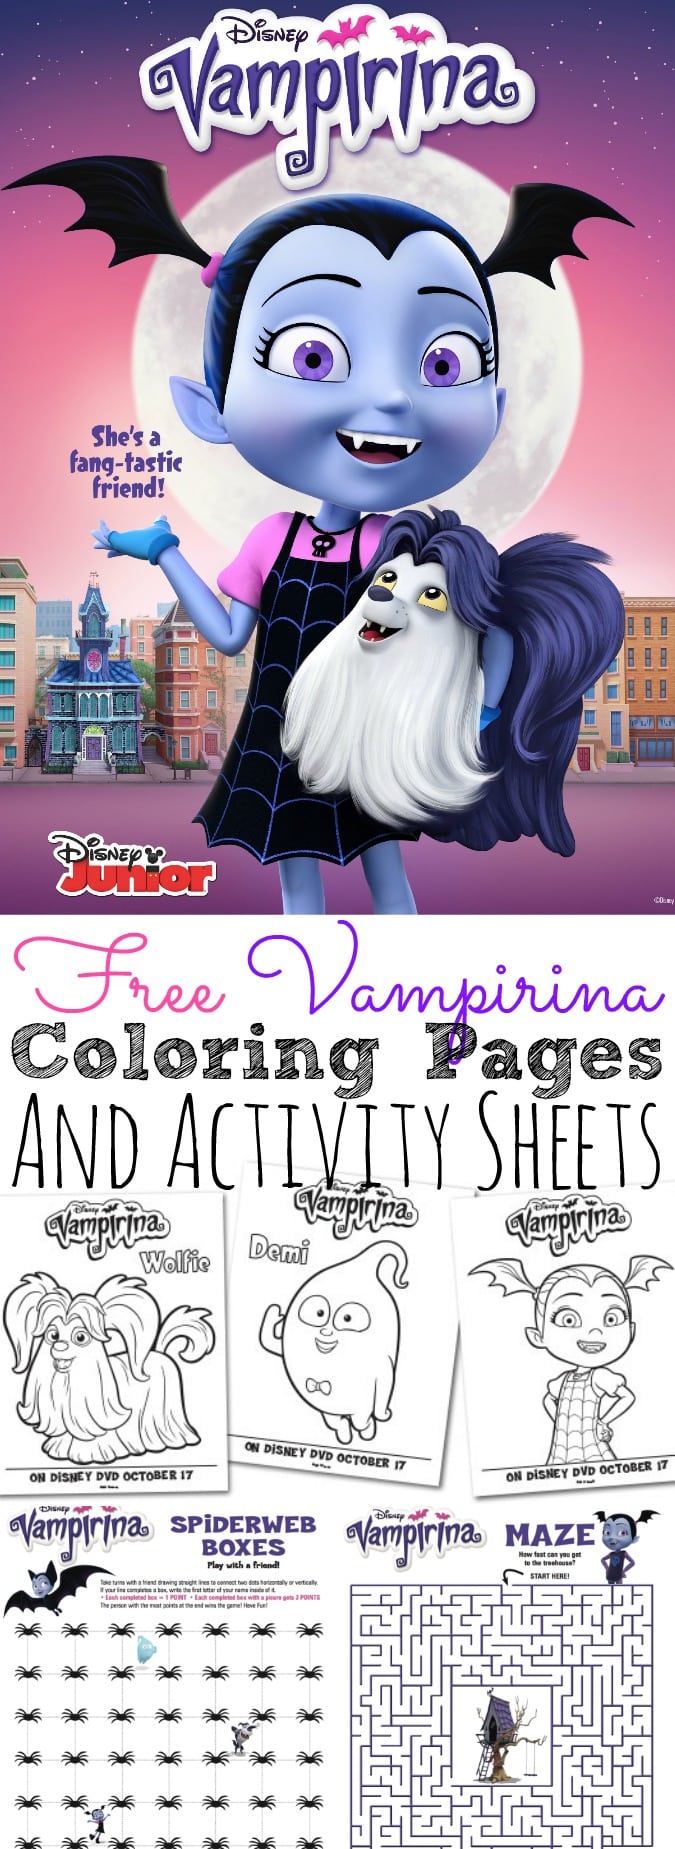 Free Vampirina Coloring Pages and Activity Sheets